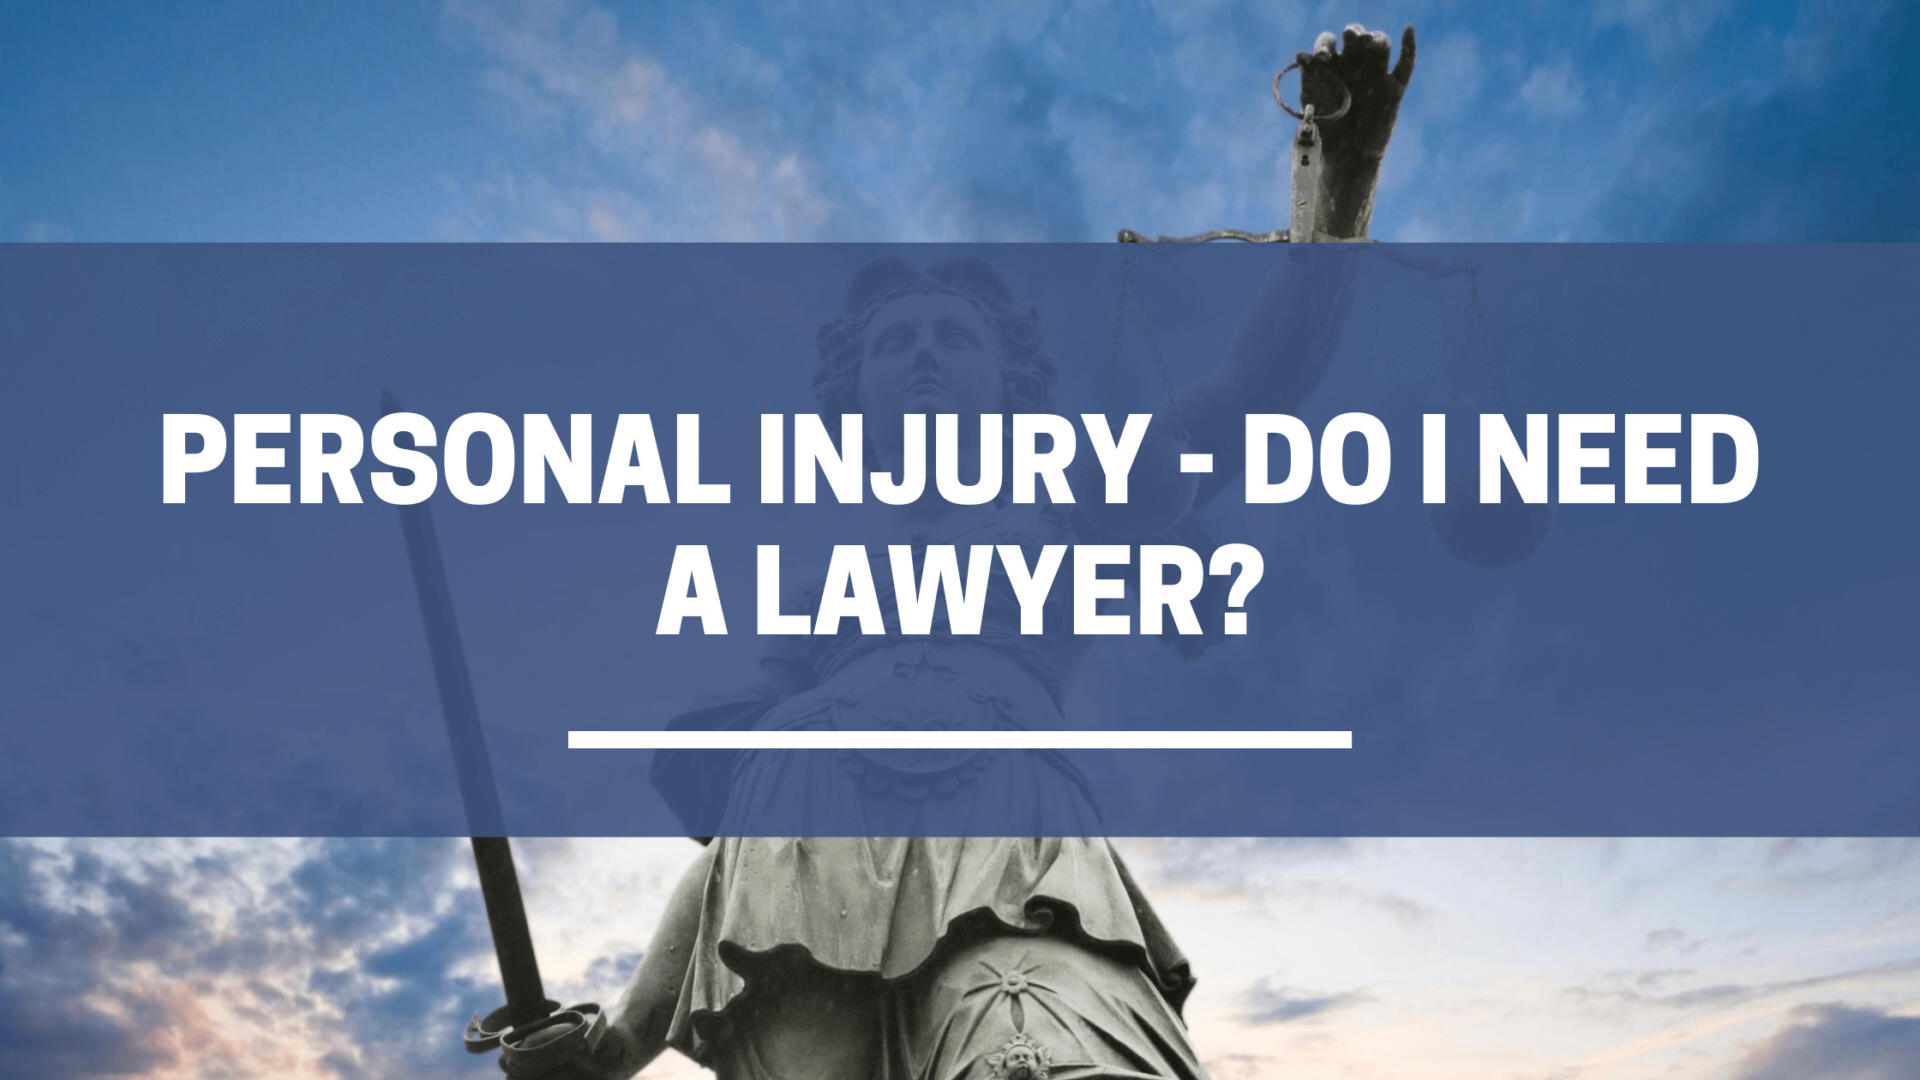 Lesiones Personales - ¿Necesito un abogado?